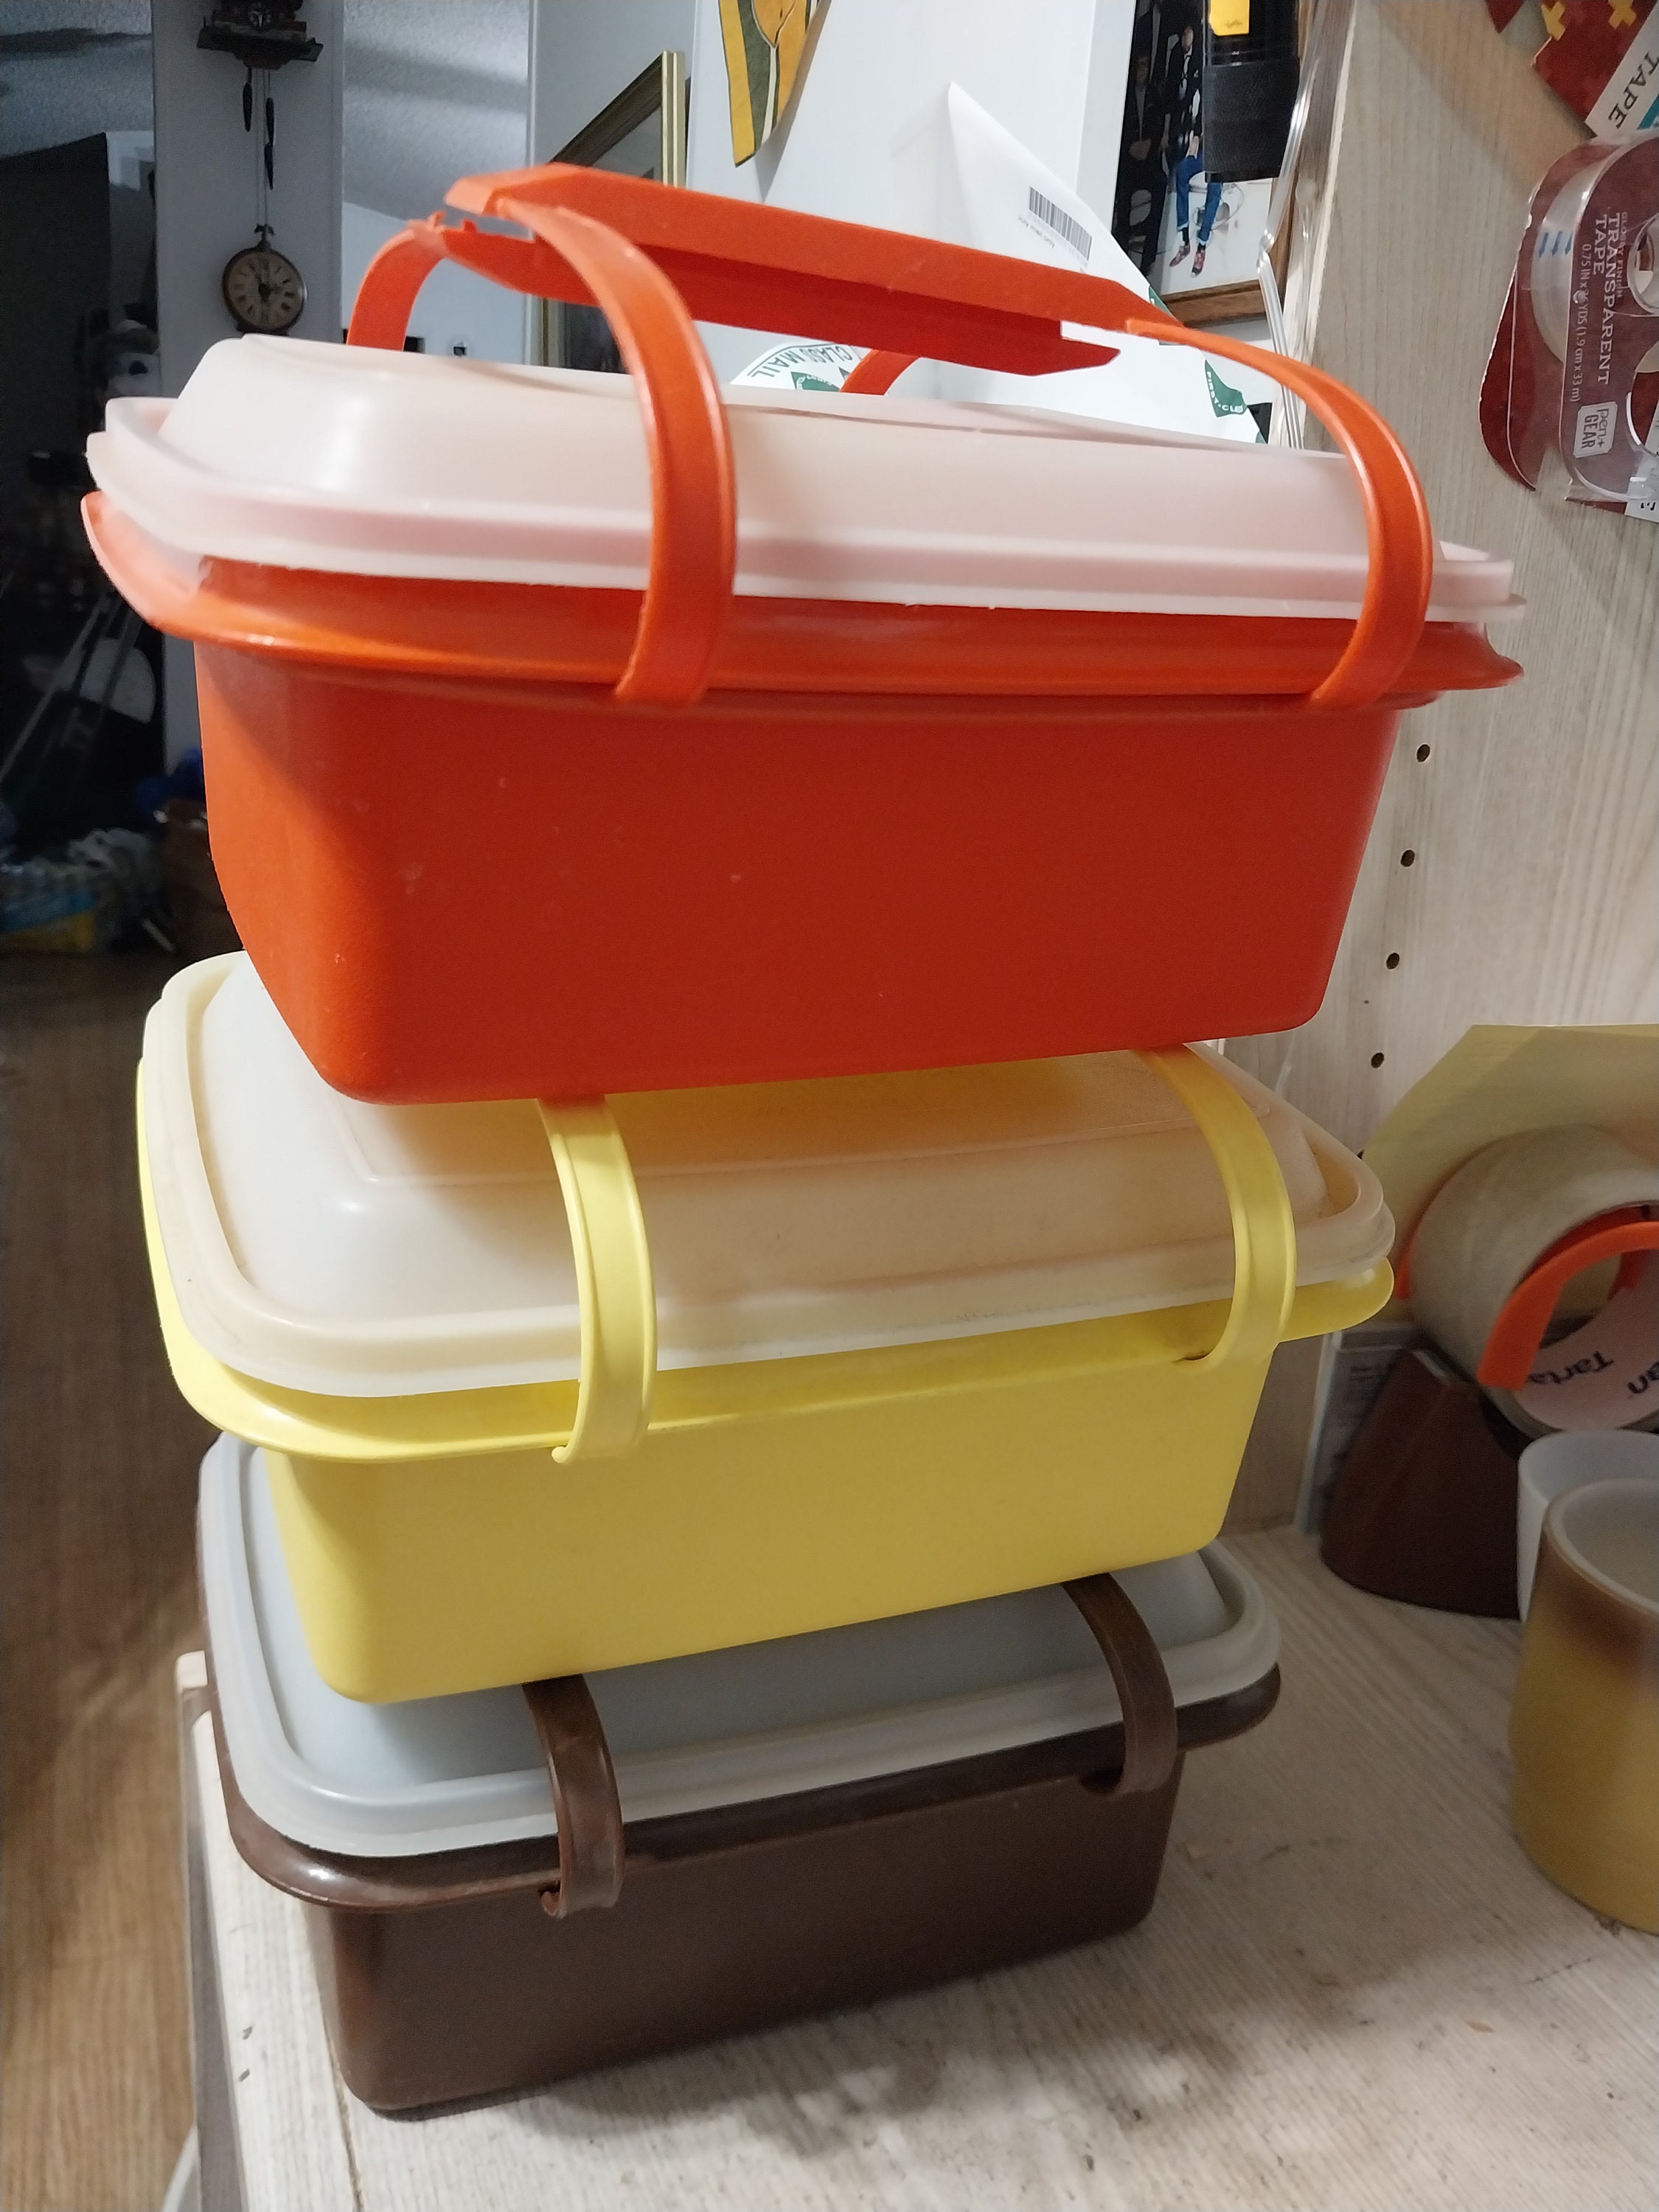 Tupperware Pack N Carry lunch box, orange tupperware, sandwich box,  1254-11, tupperware lunch containers, plastic storage, food storage